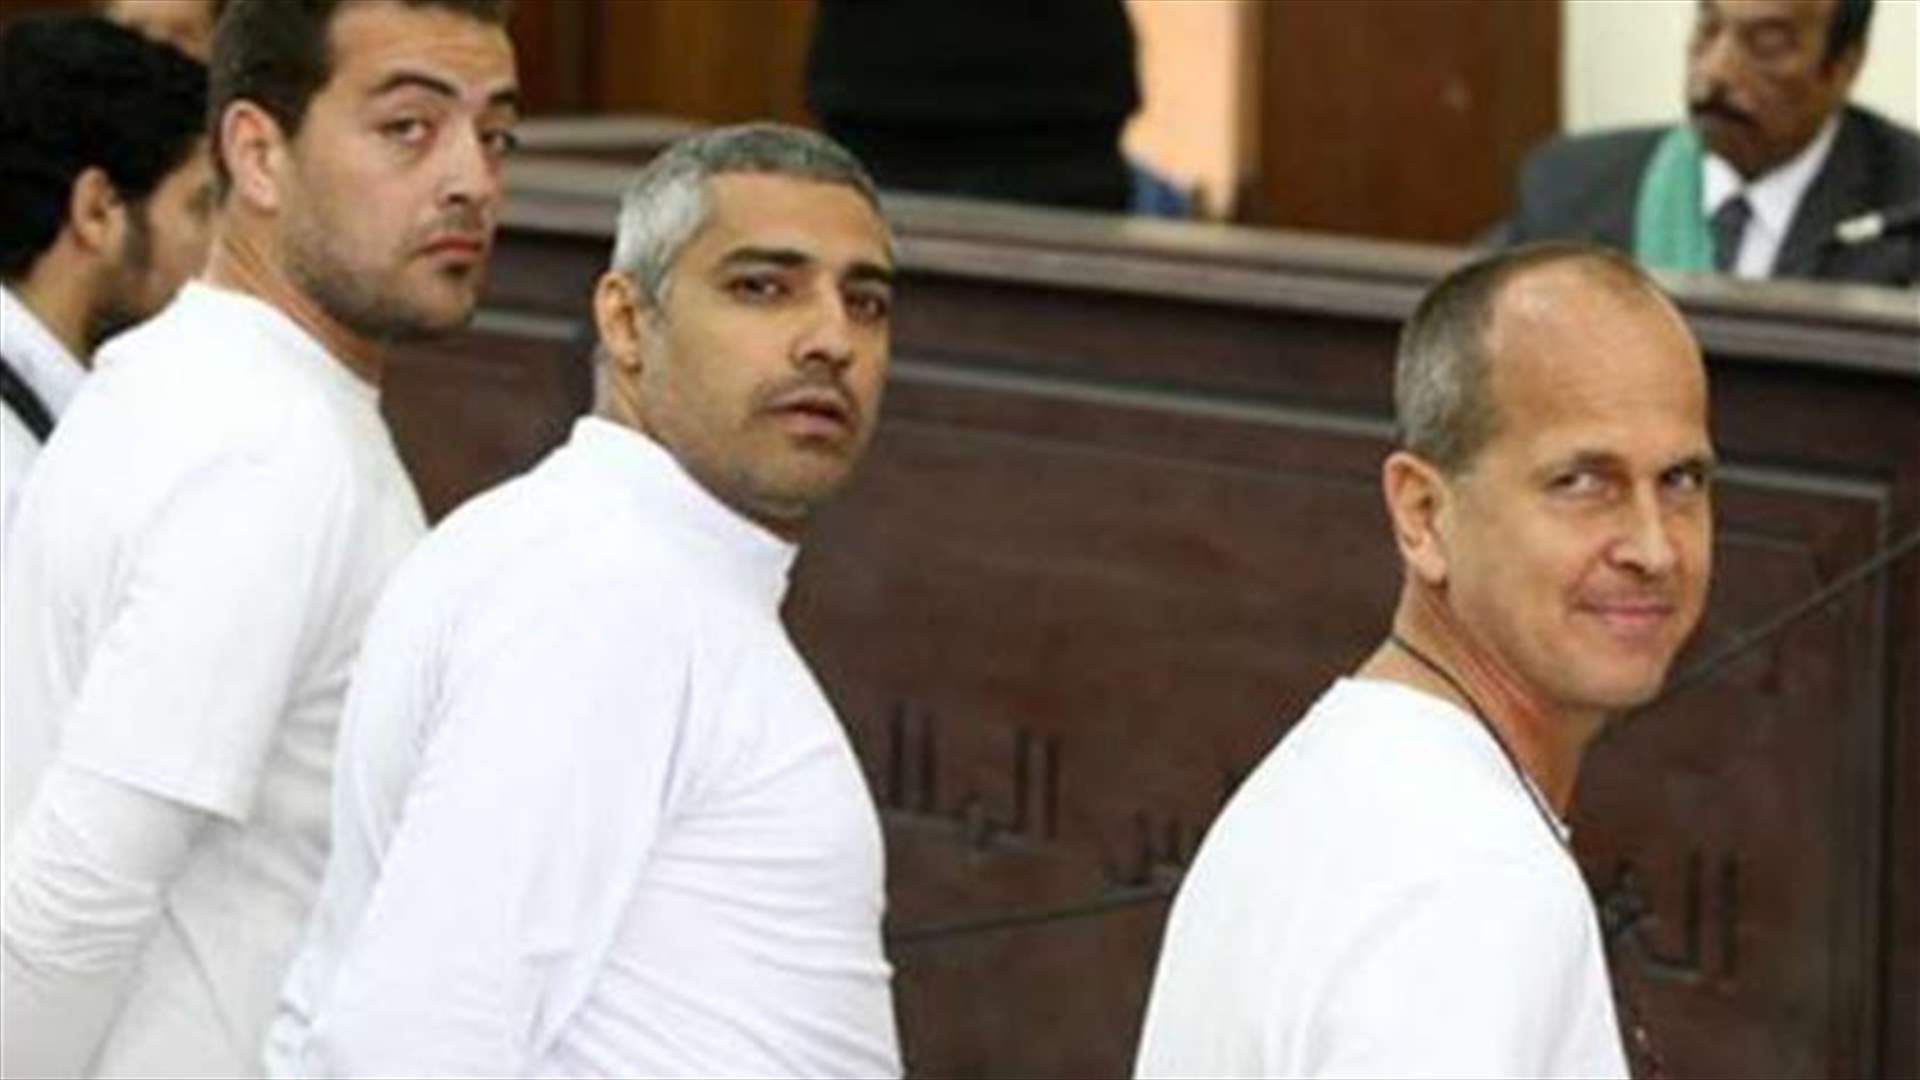 صحافي قناة الجزيرة الاسترالي المحكوم عليه بمصر يطلب عفوا رئاسيا